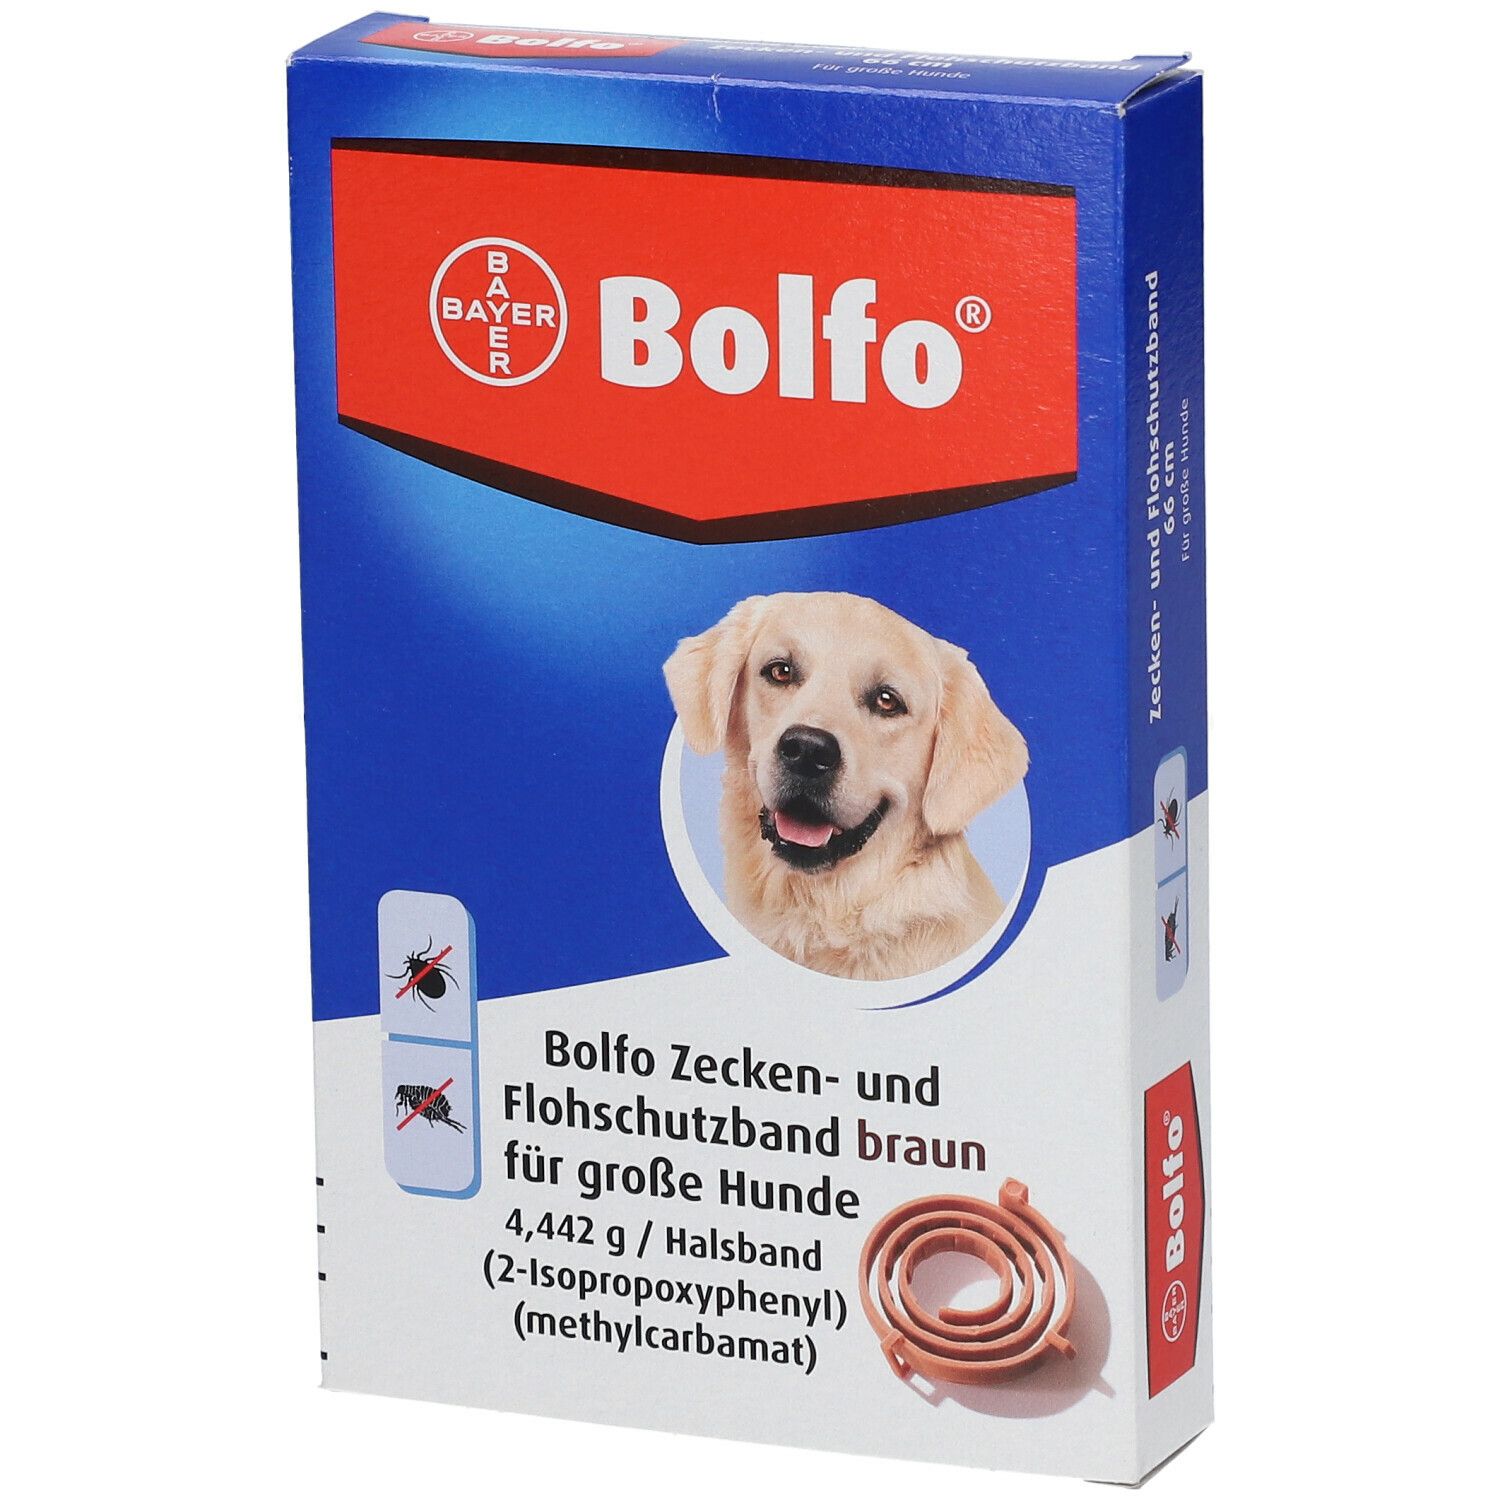 Bolfo® Zecken- und Flohschutzband braun für große Hunde